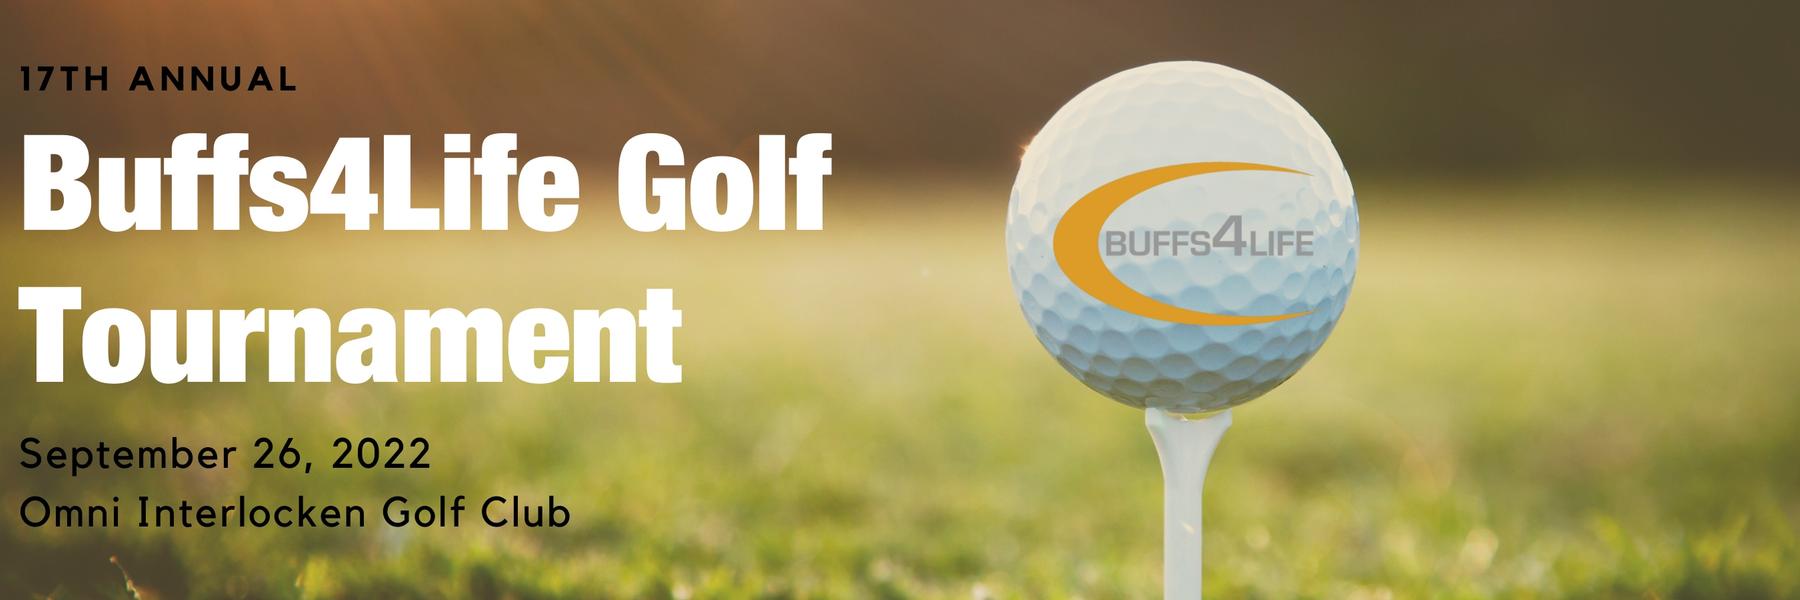 2022 Buffs4Life Golf Tournament Weekend